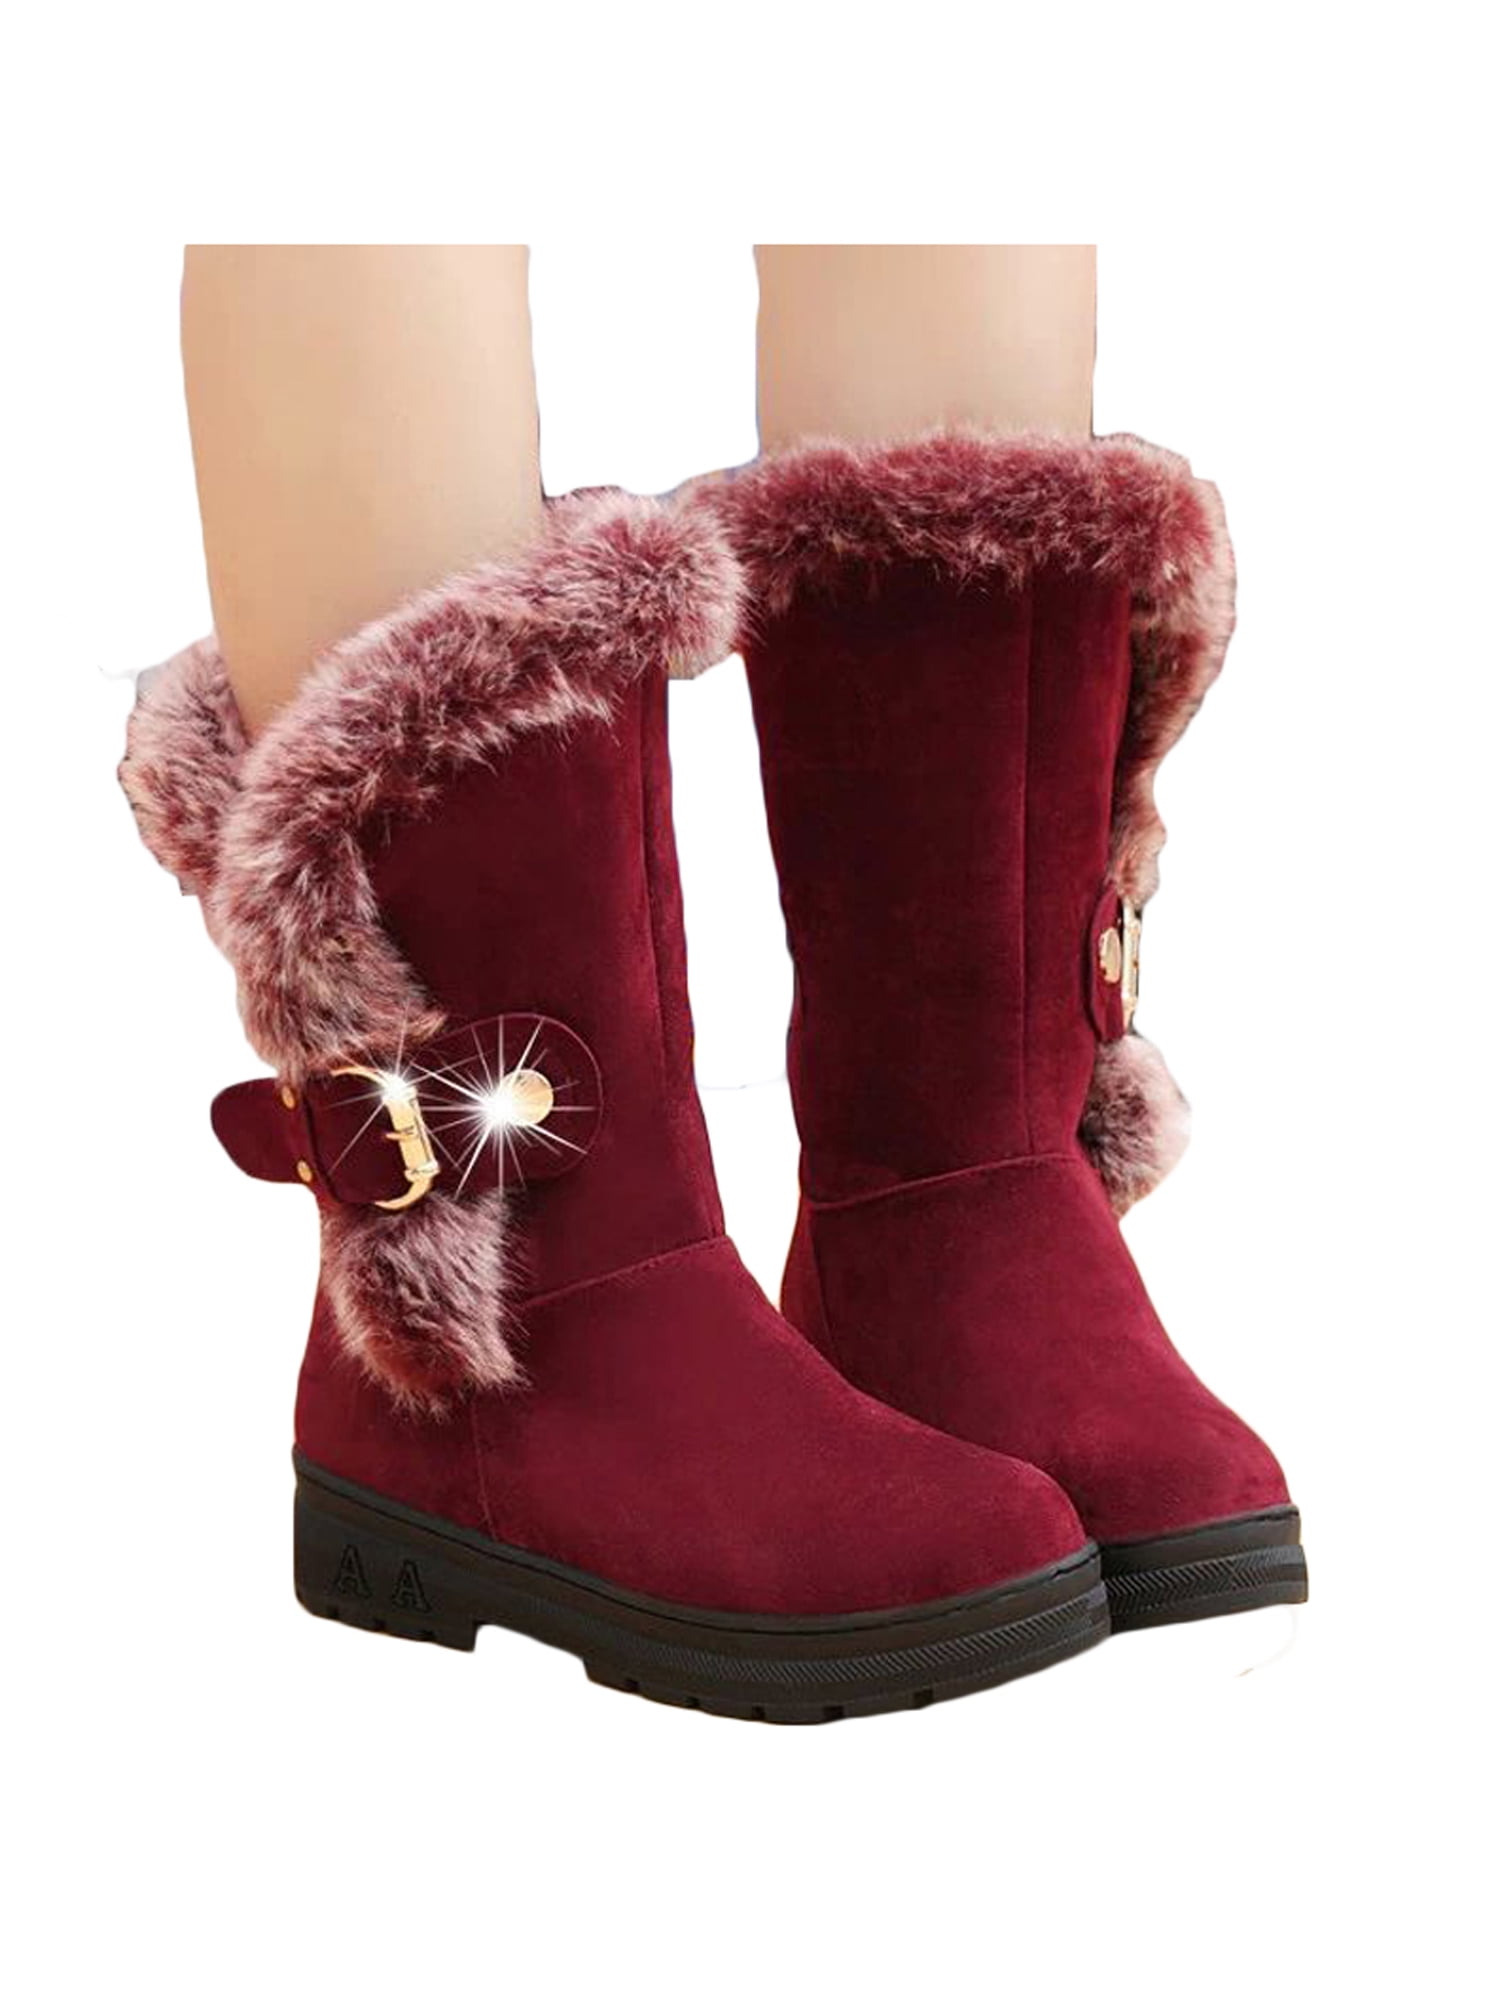 Women's Block Heel Mid Calf Fur Lined Warm Snow Boots Winter Suede Zipper Shoes